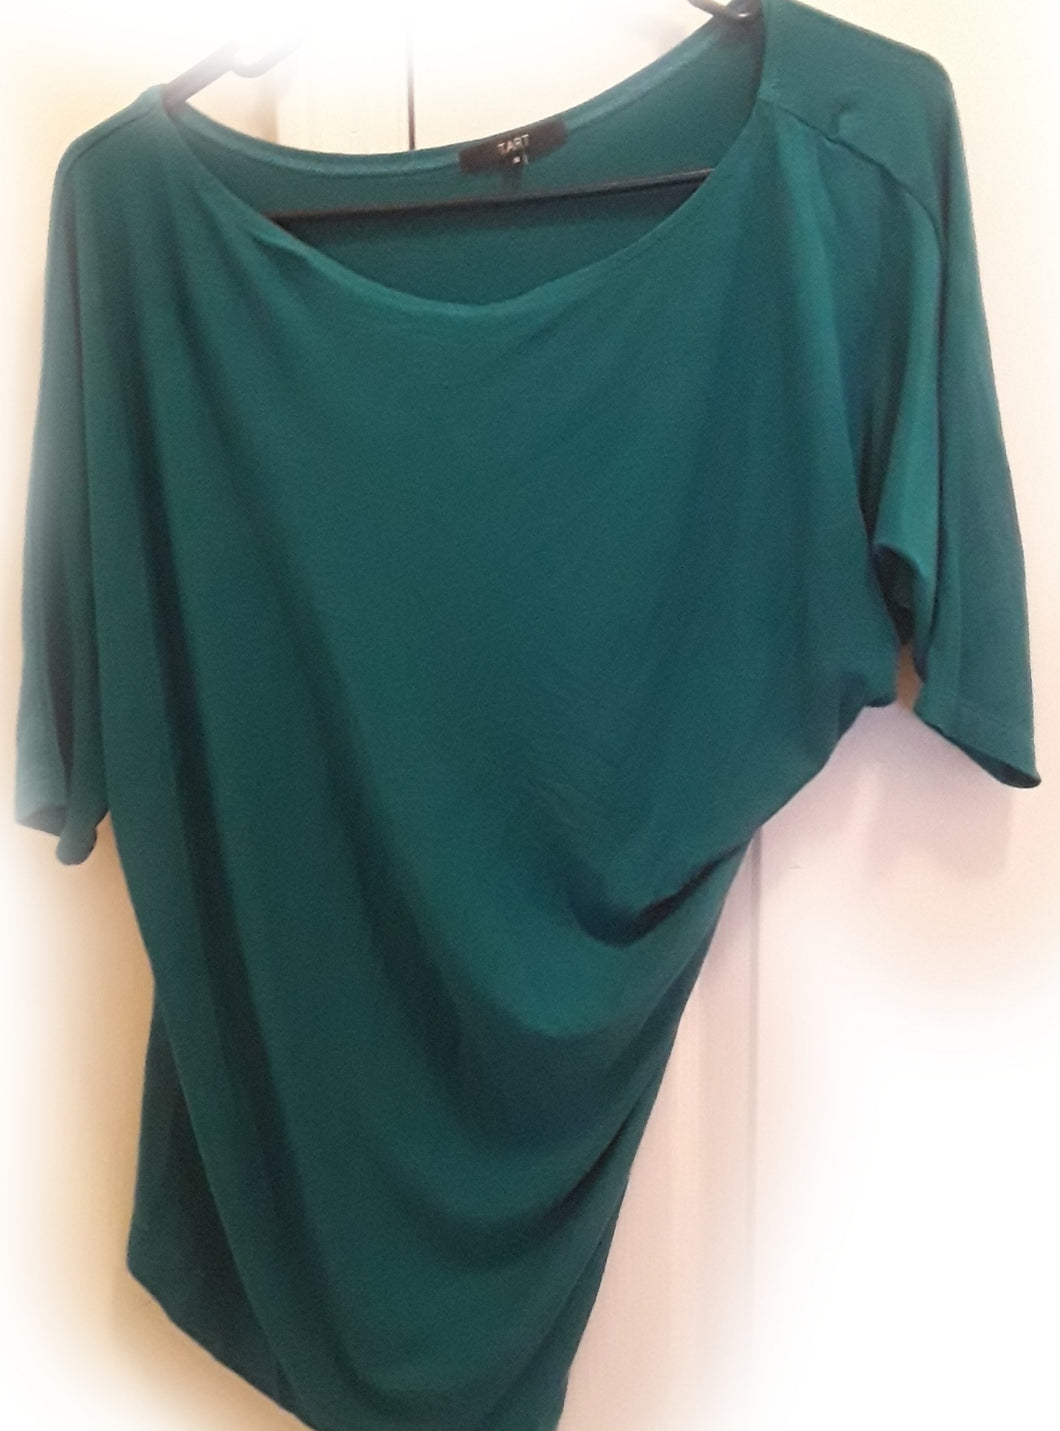 Short Sleeve A-Line Teal Green Shirt